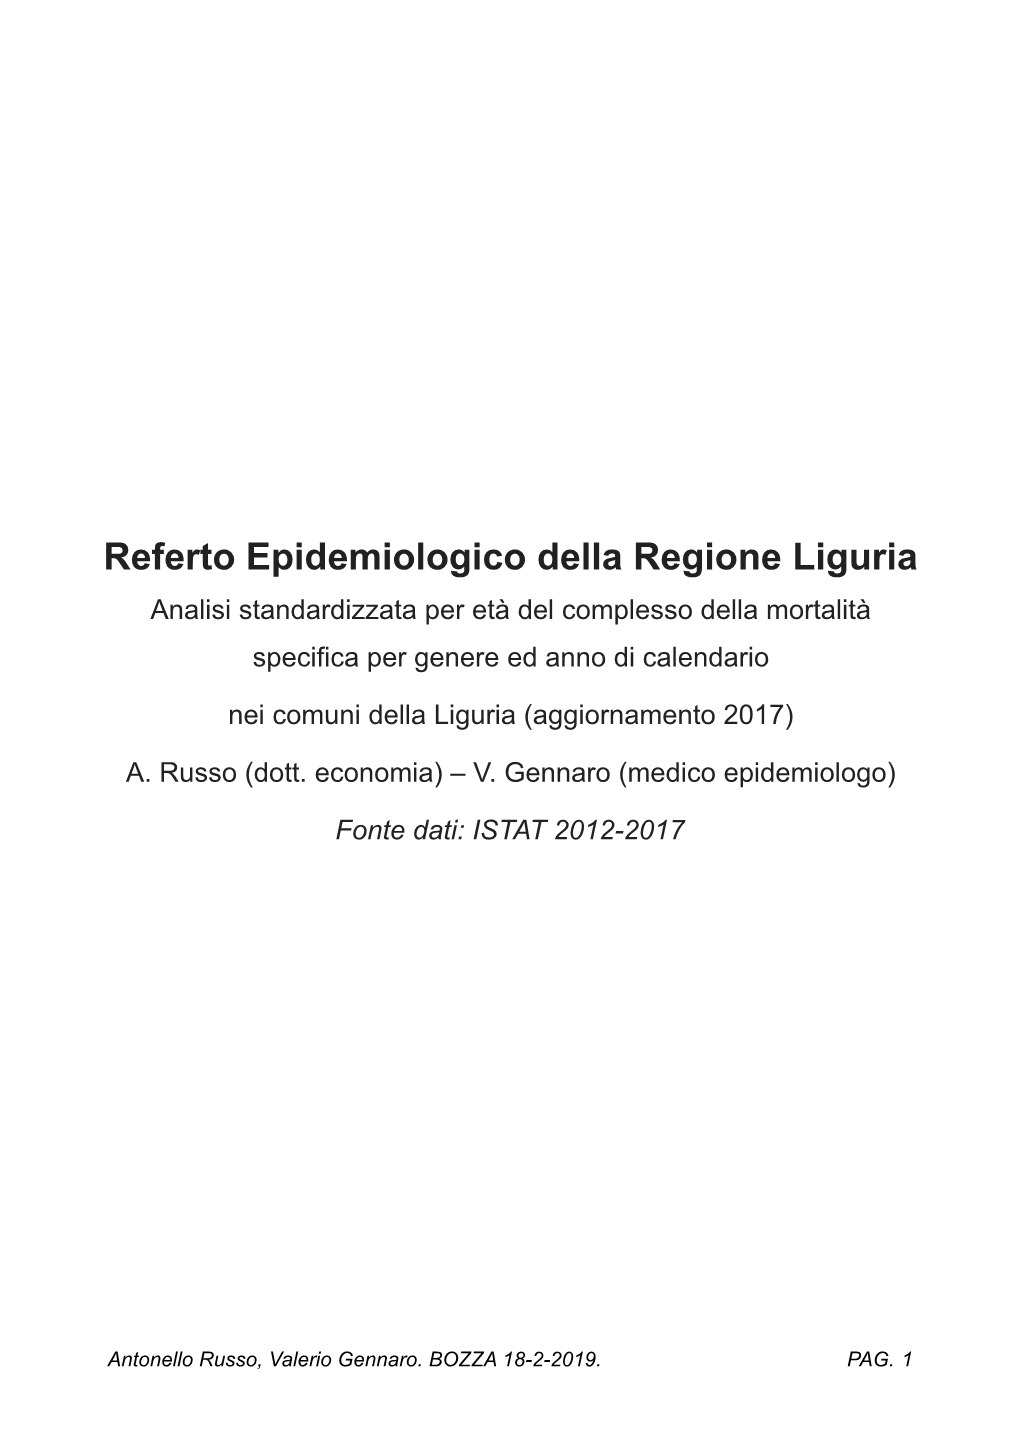 Referto Epidemiologico Della Regione Liguria Analisi Standardizzata Per Età Del Complesso Della Mortalità Specifica Per Genere Ed Anno Di Calendario